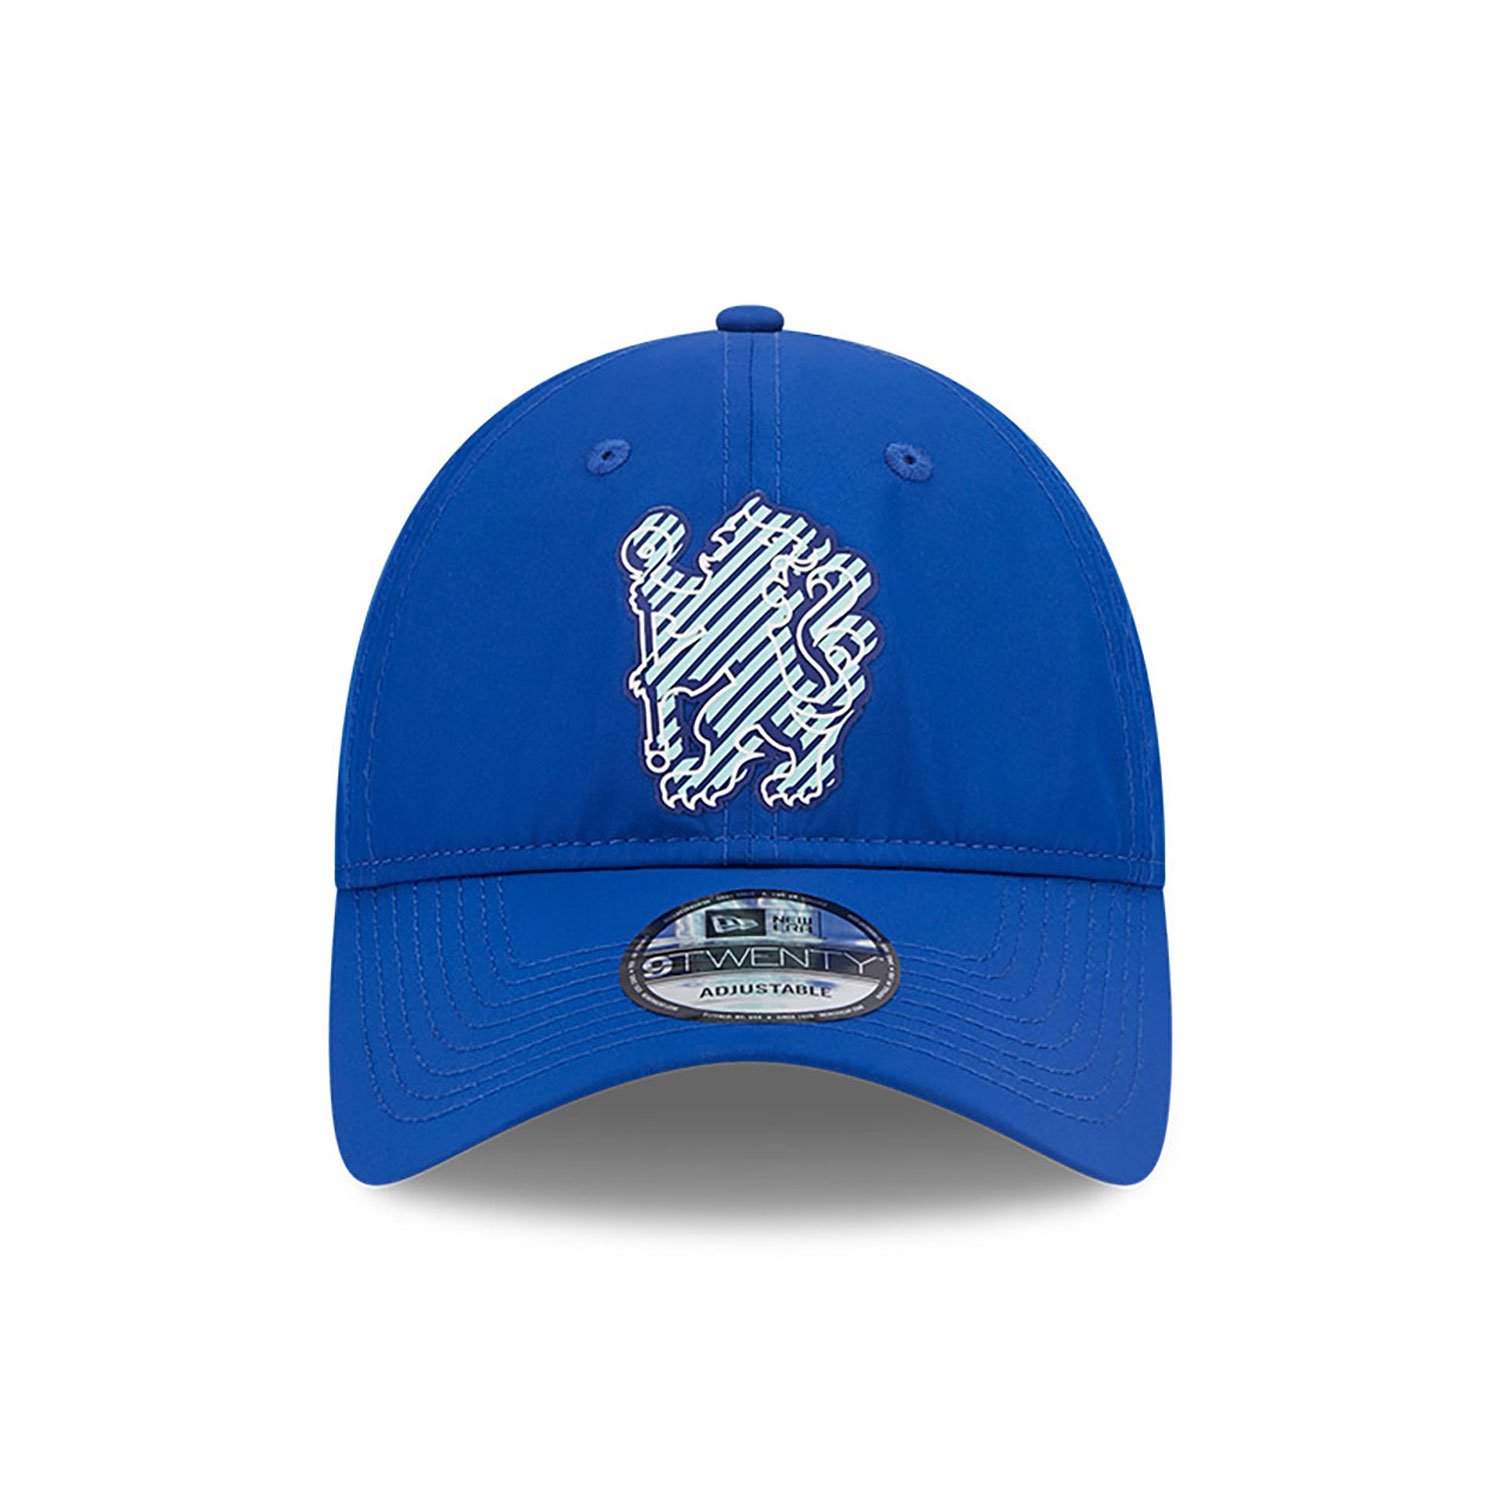 Chelsea FC Lion Crest Blue 9TWENTY Adjustable Cap